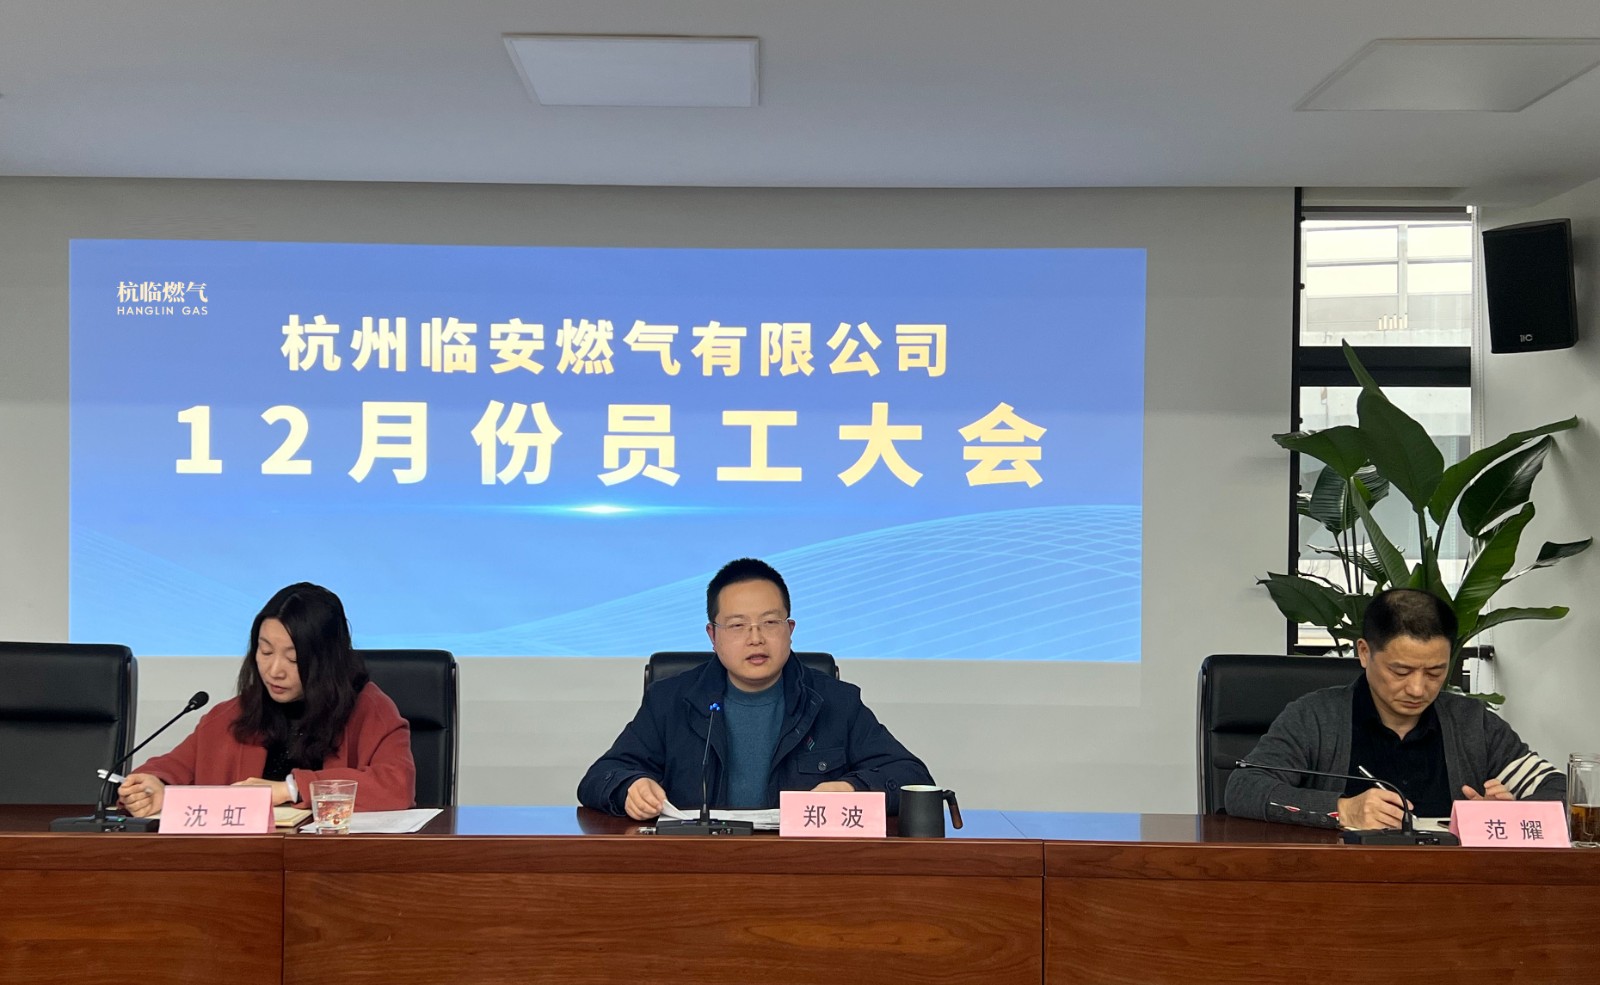 創新突破 堅守底線 勇于擔當——杭州臨安燃氣有限公司召開12月份員工大會